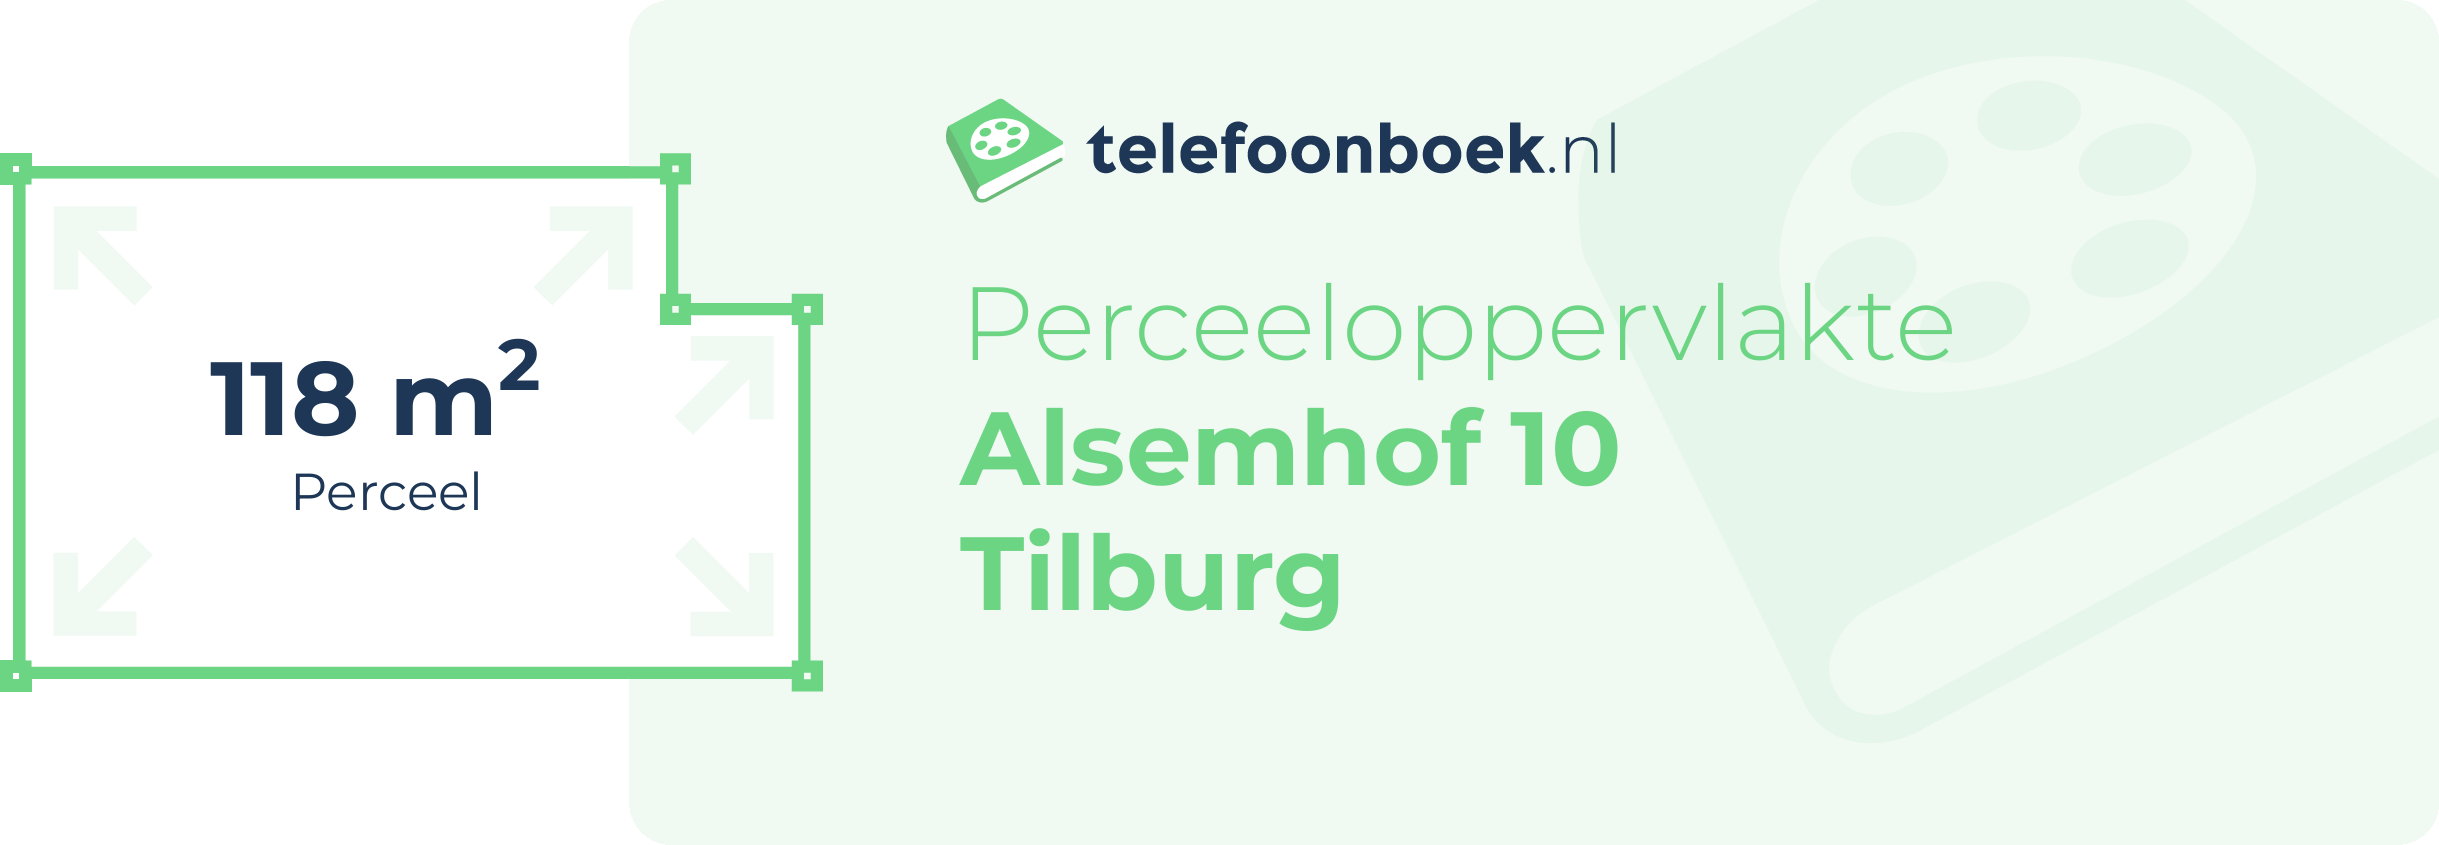 Perceeloppervlakte Alsemhof 10 Tilburg